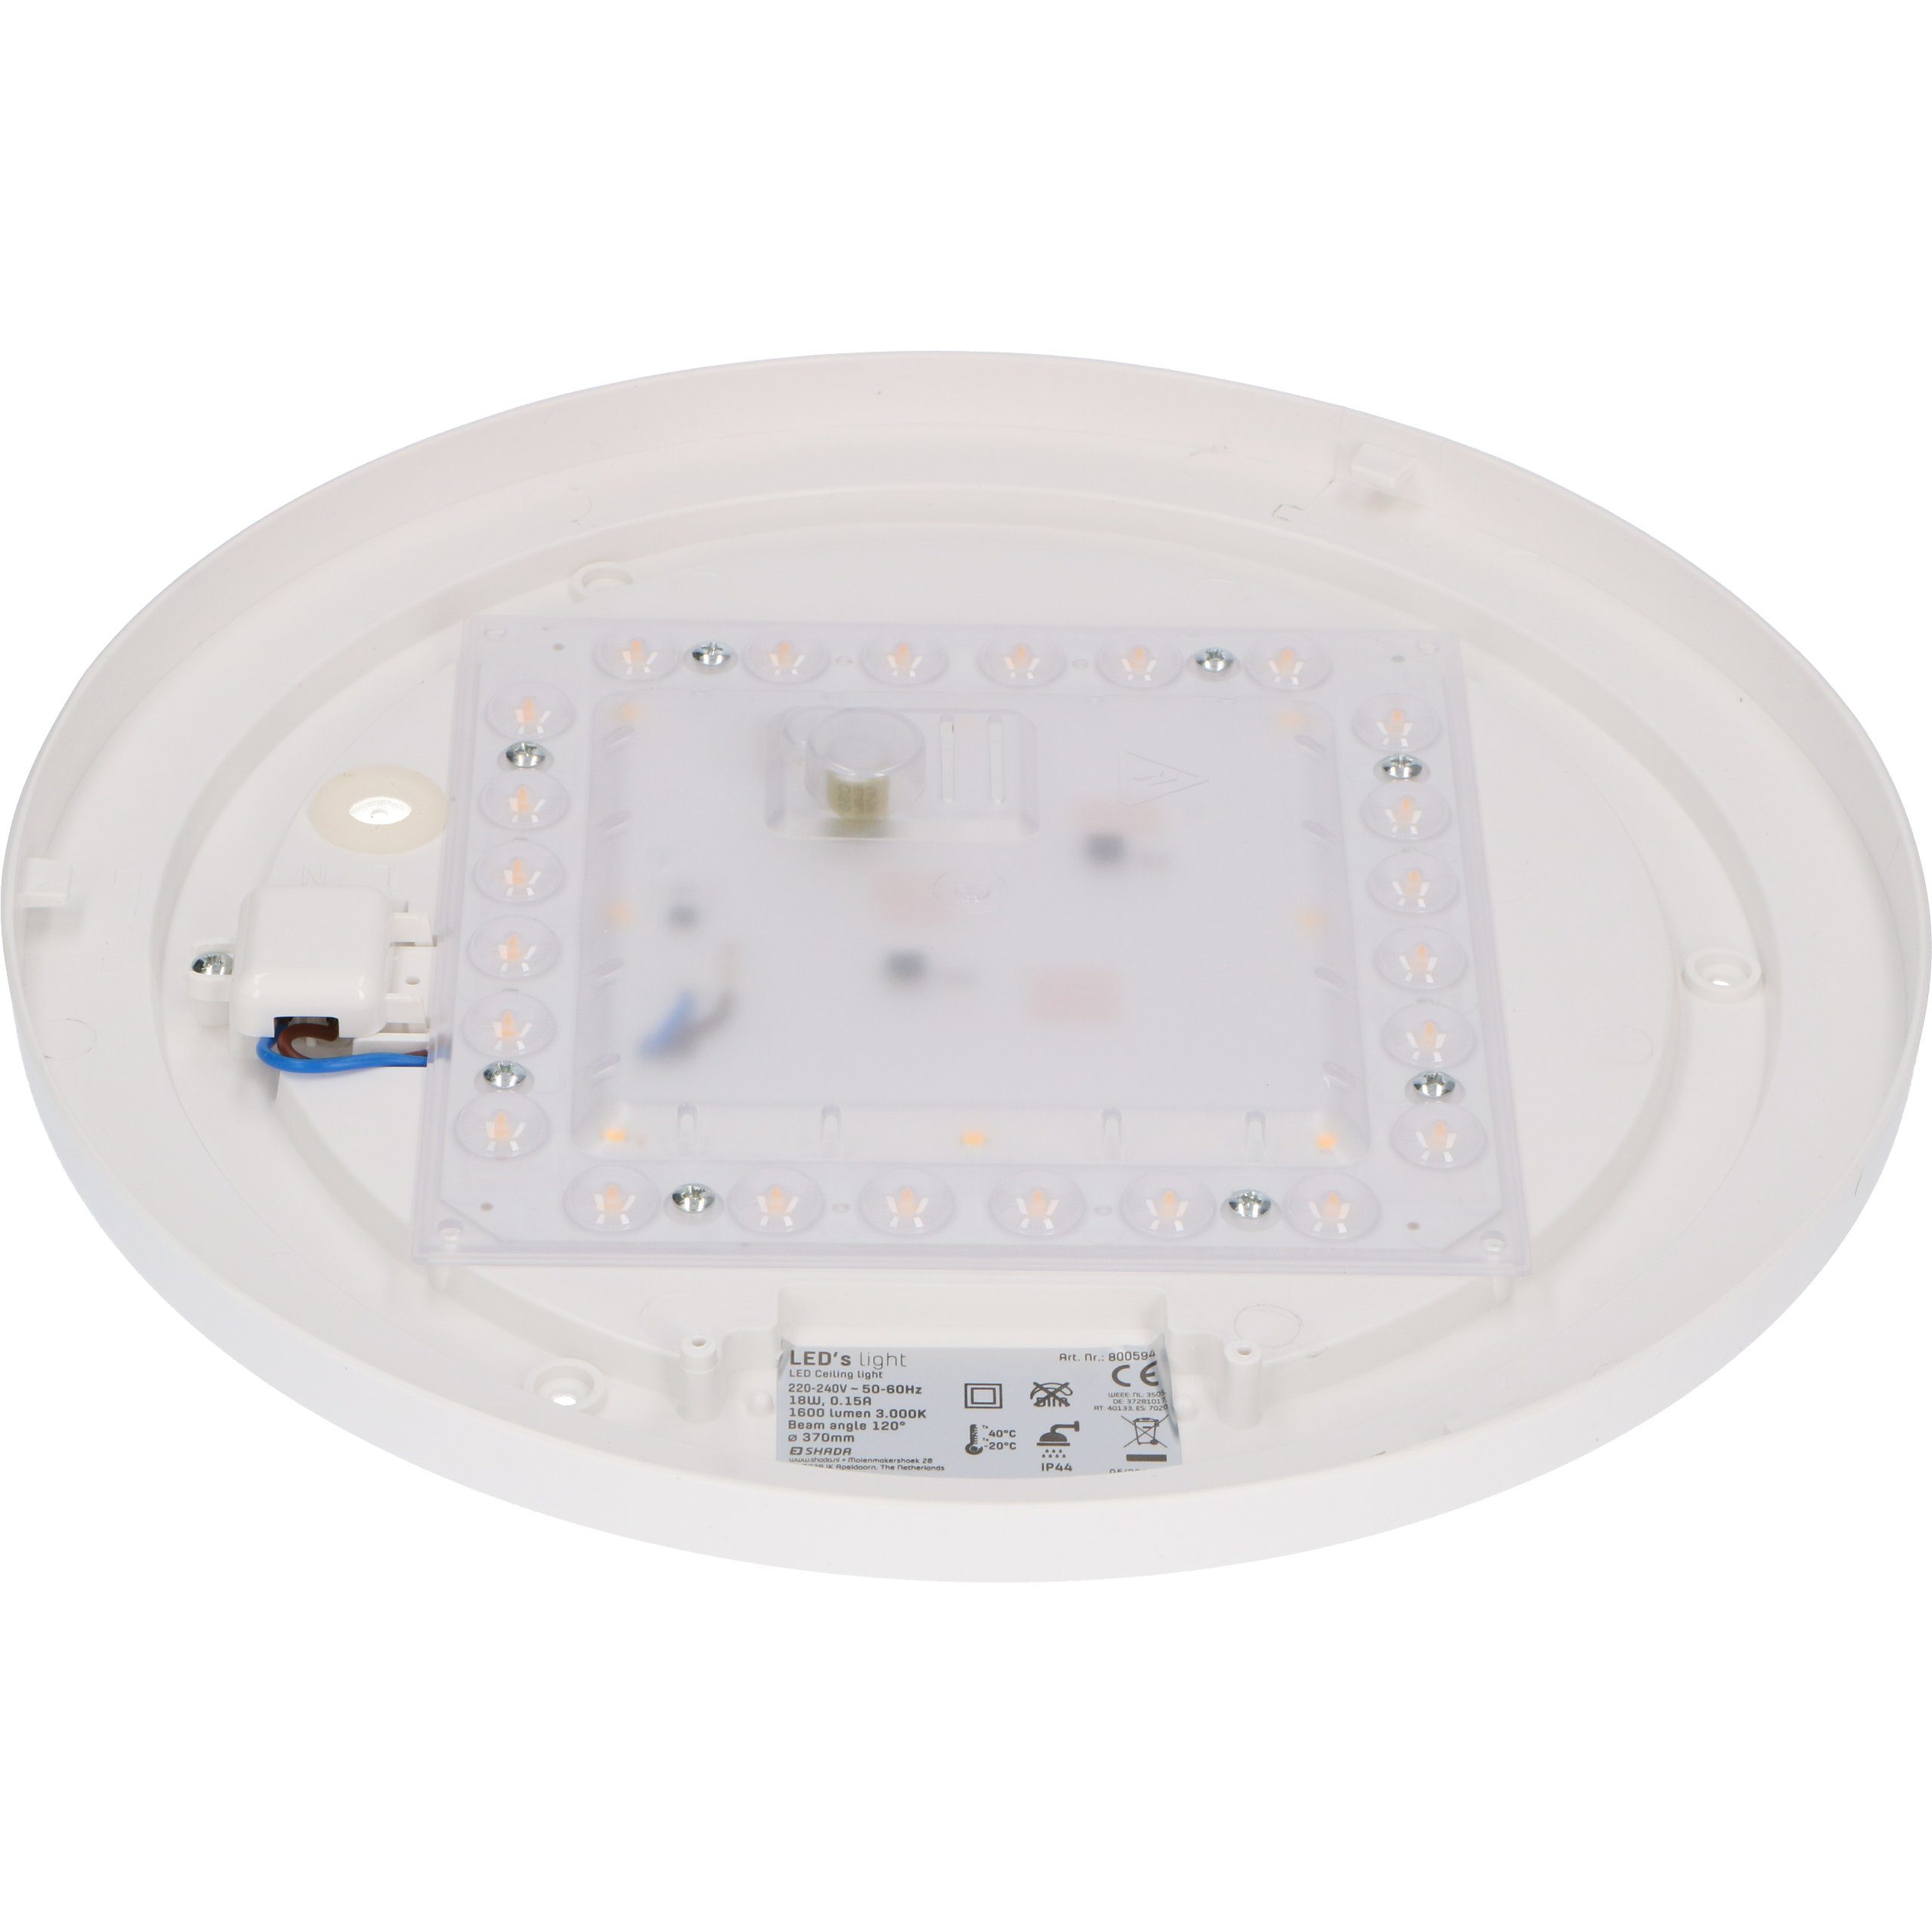 37cm Deckenleuchte light 18W Schutzbereich LED's LED, Deckenleuchte, LED 3 warmweiß 0800595 IP44 geeignet